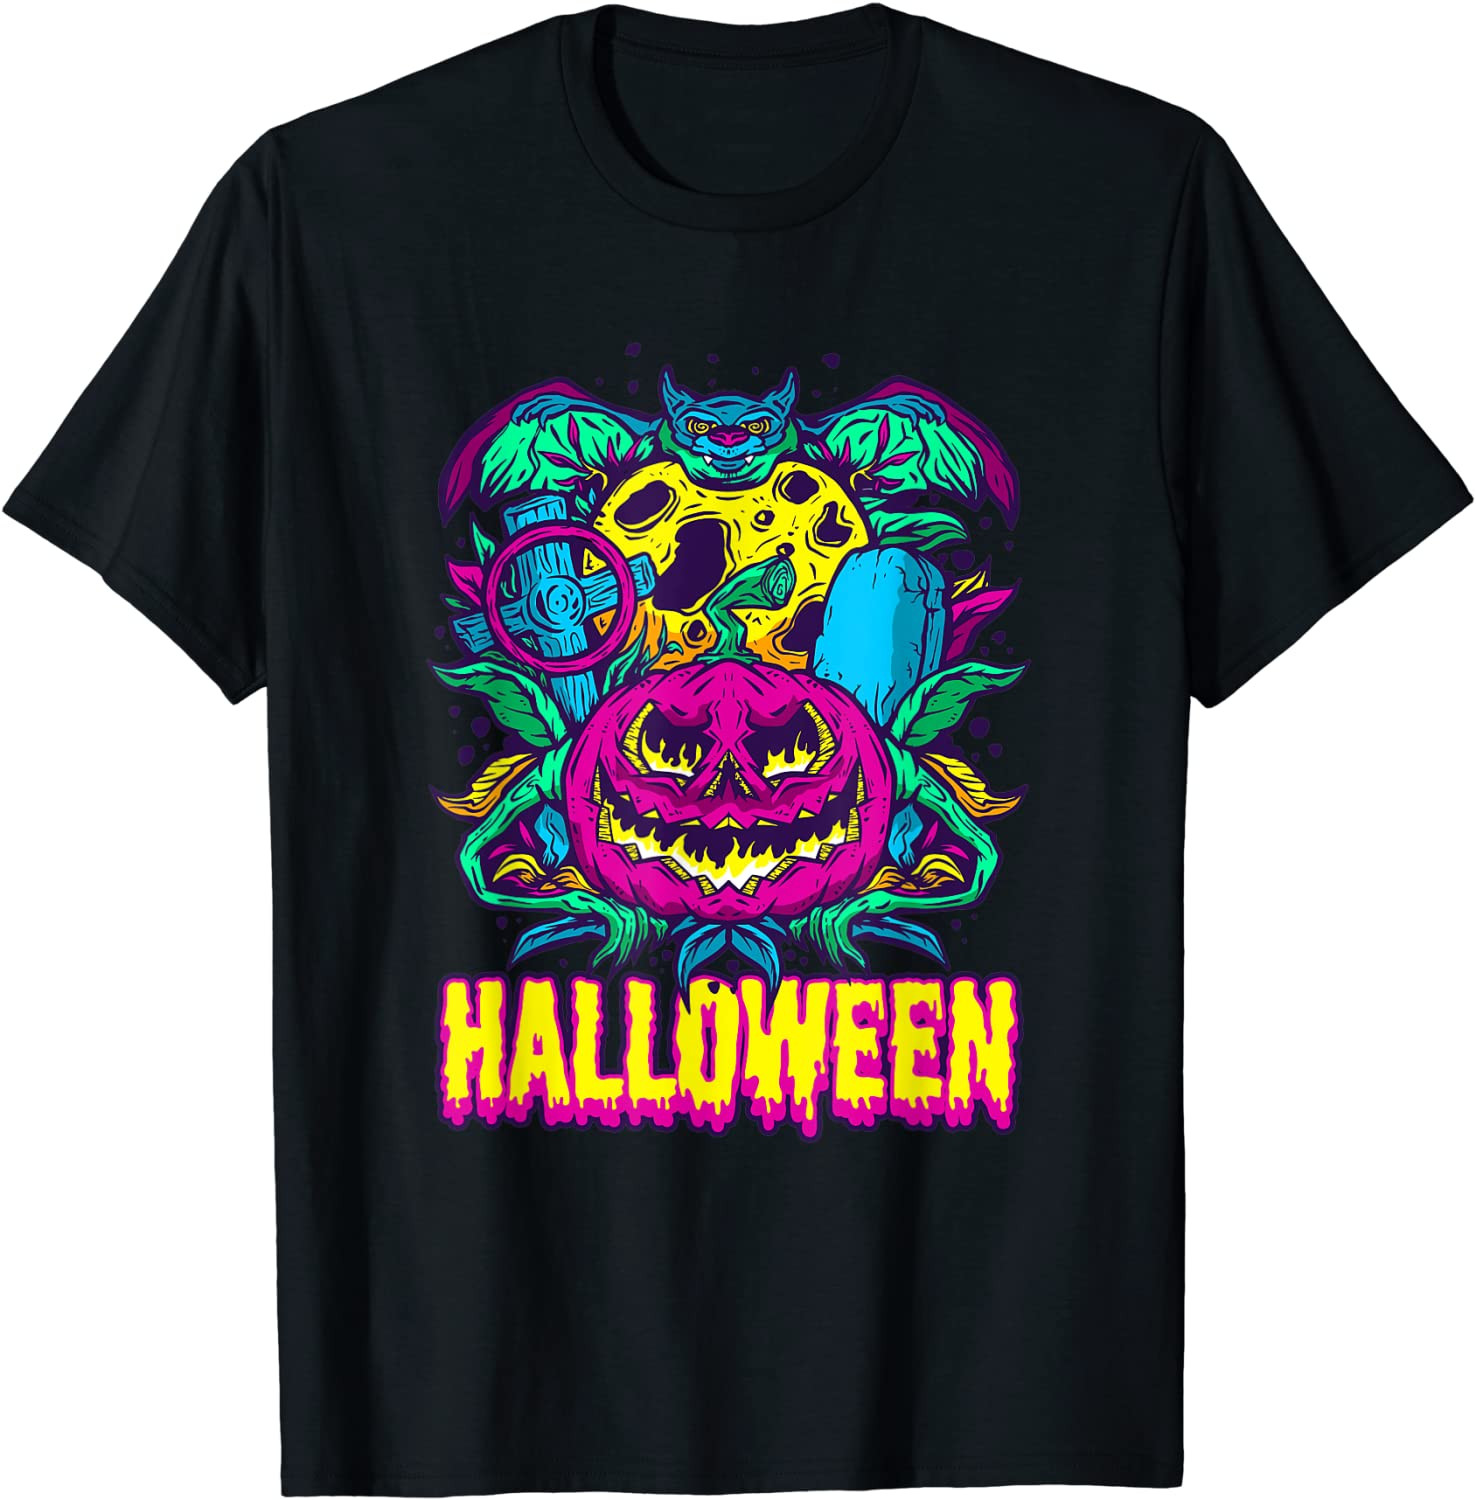 Halloween Pumpkin Scary Ghost Monster Horror T-Shirt